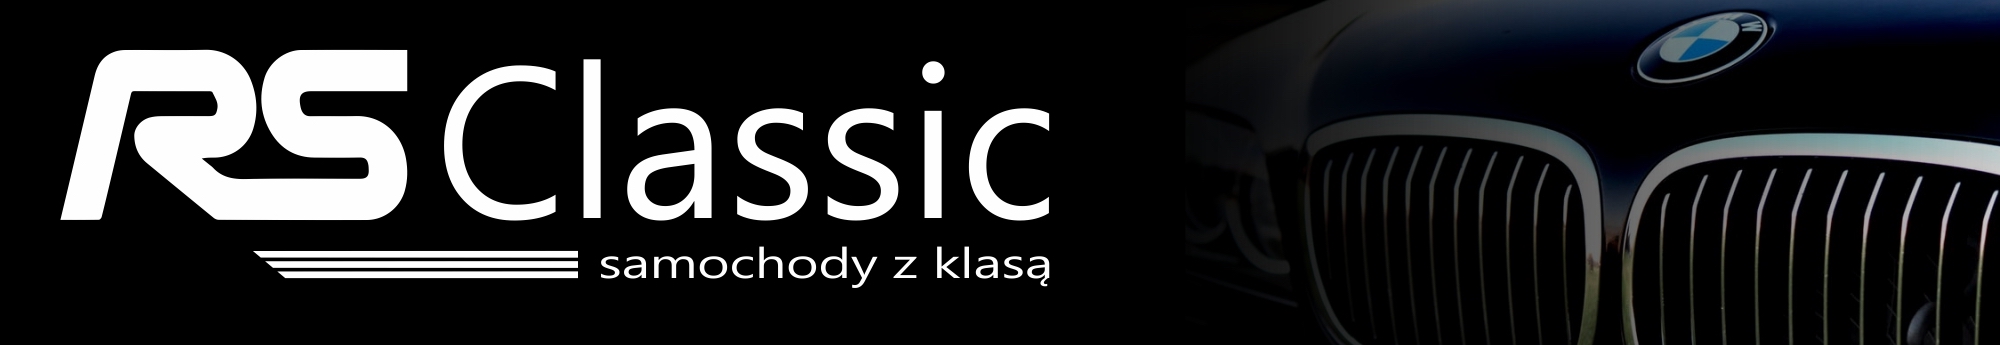 rsclassic.pl